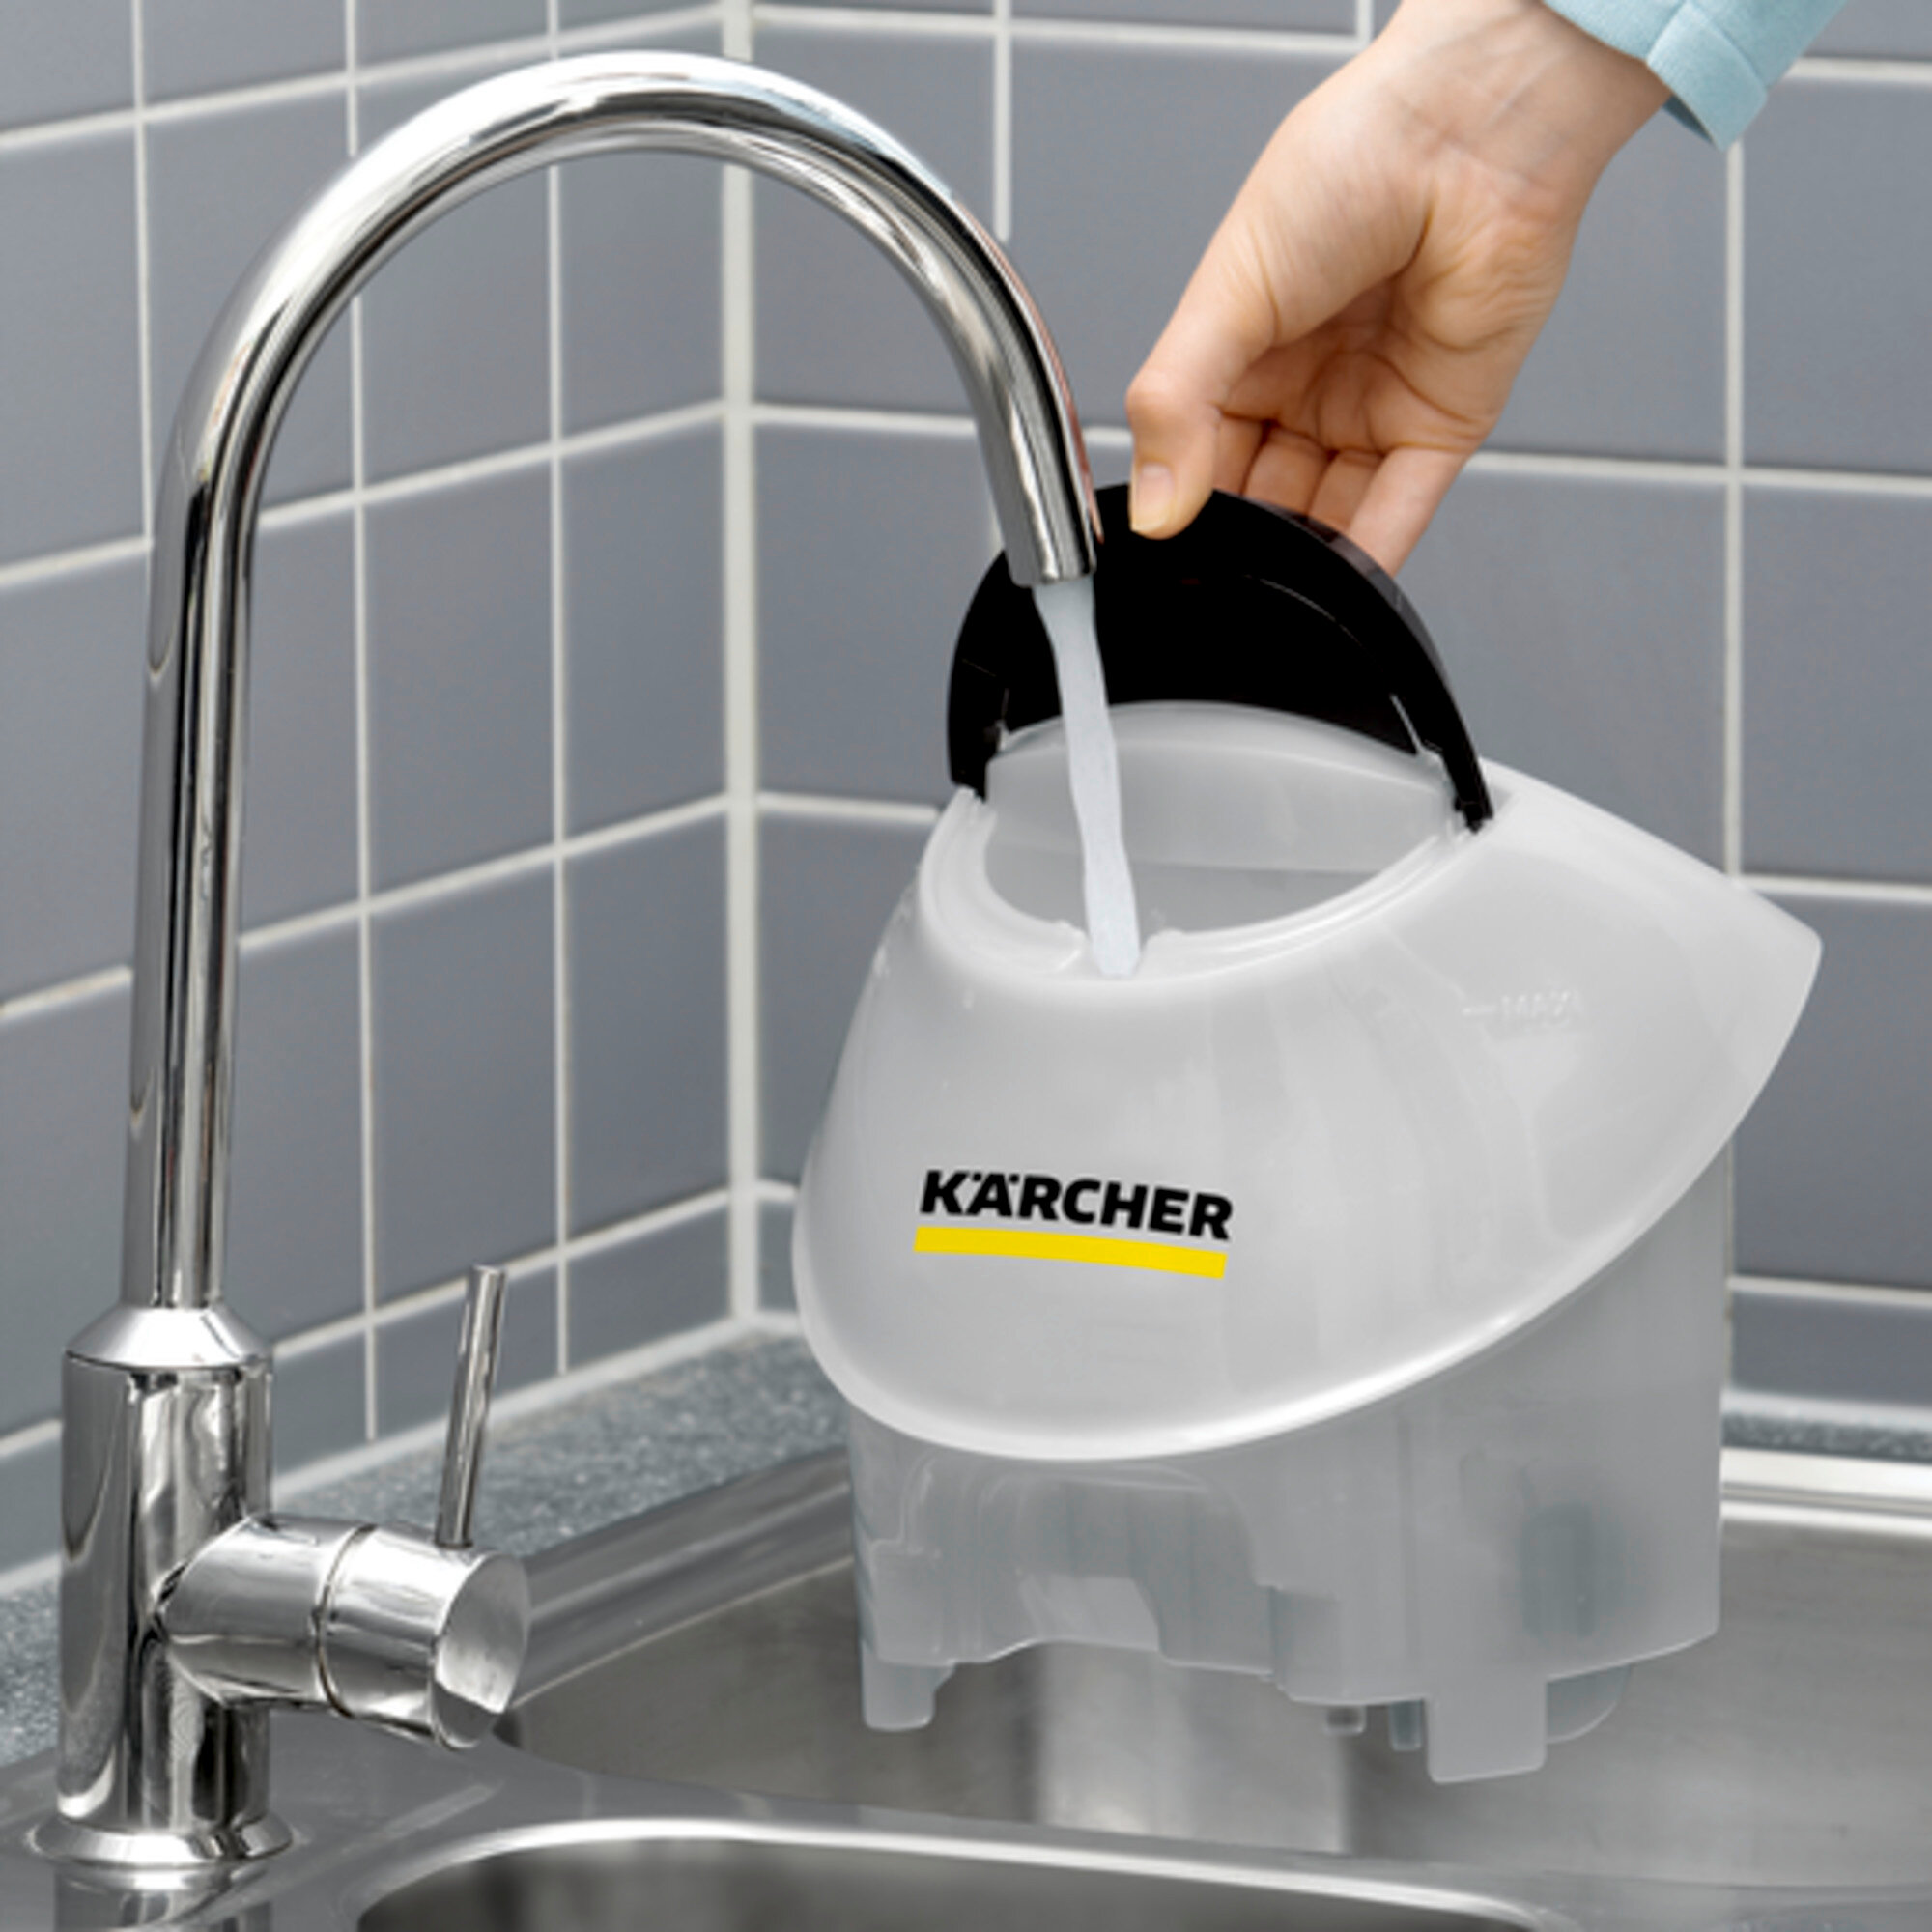 Пароочиститель Karcher SC 5 EasyFix Iron Plug - <h3>Функция VapoHydro</h3>
Подмешивает горячую воду в пар. Грязь отделяется легко и смывается водой. Для идеального результата очистки